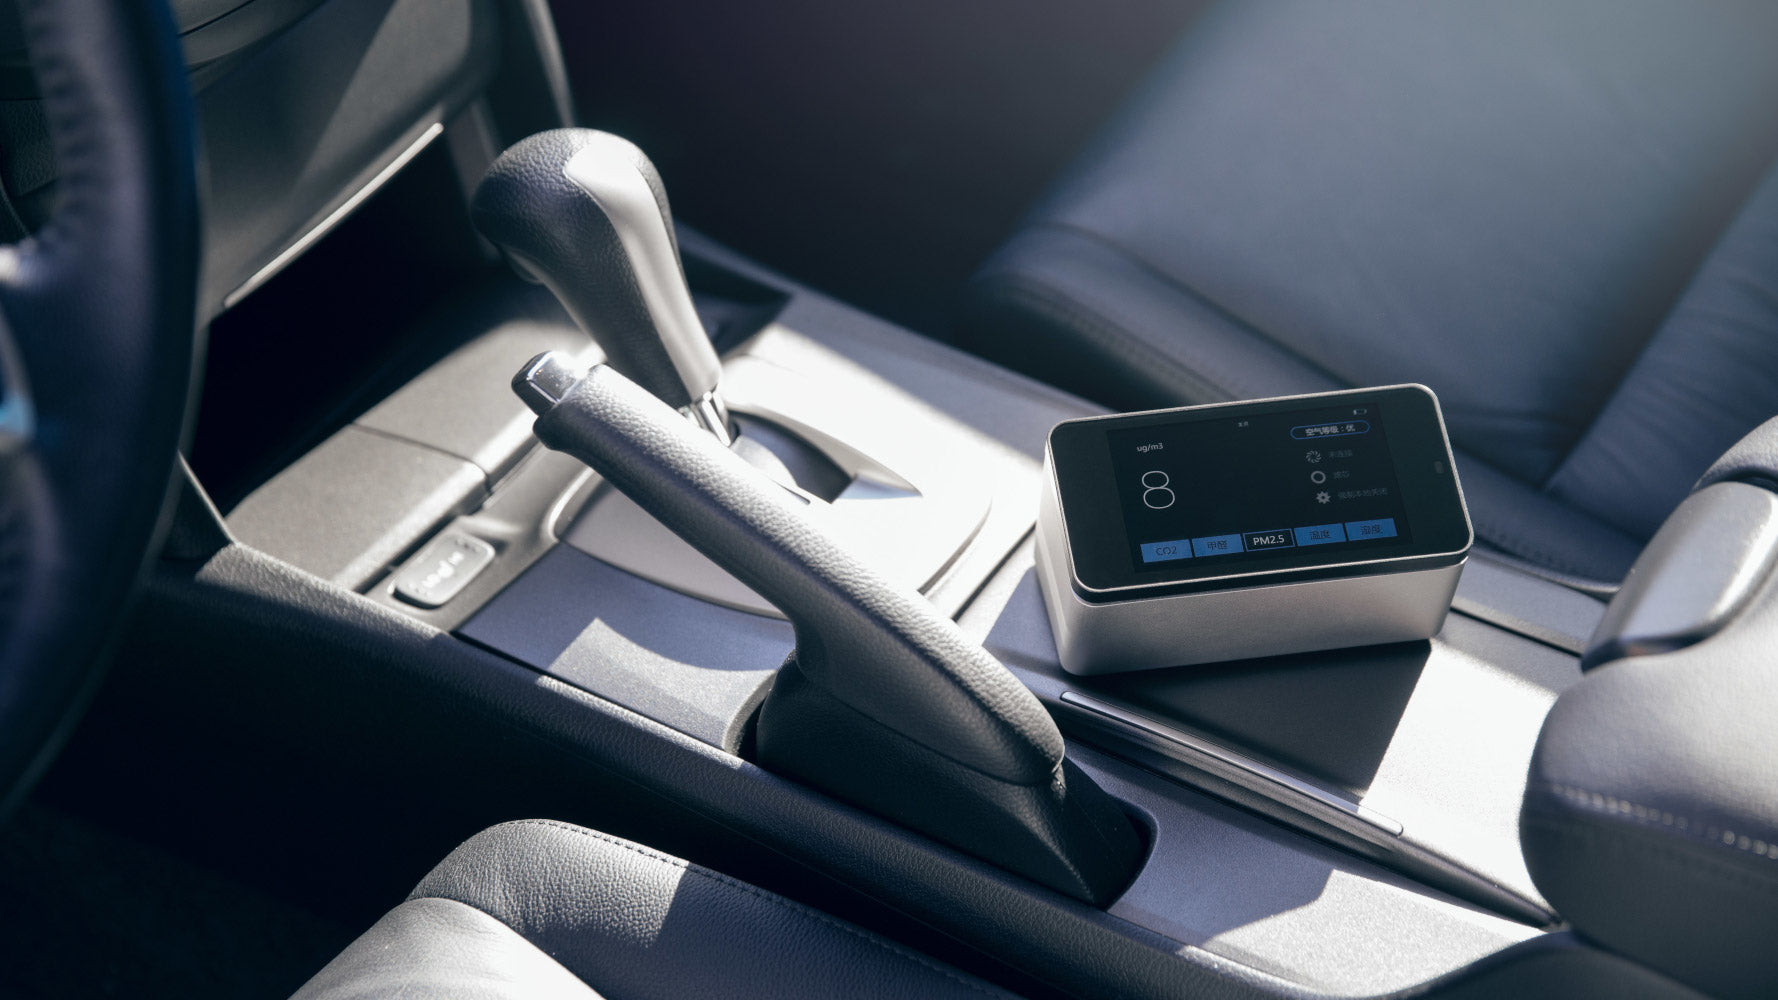 Lifa Air LAM01 Air purifier smart controller lifestyle in car